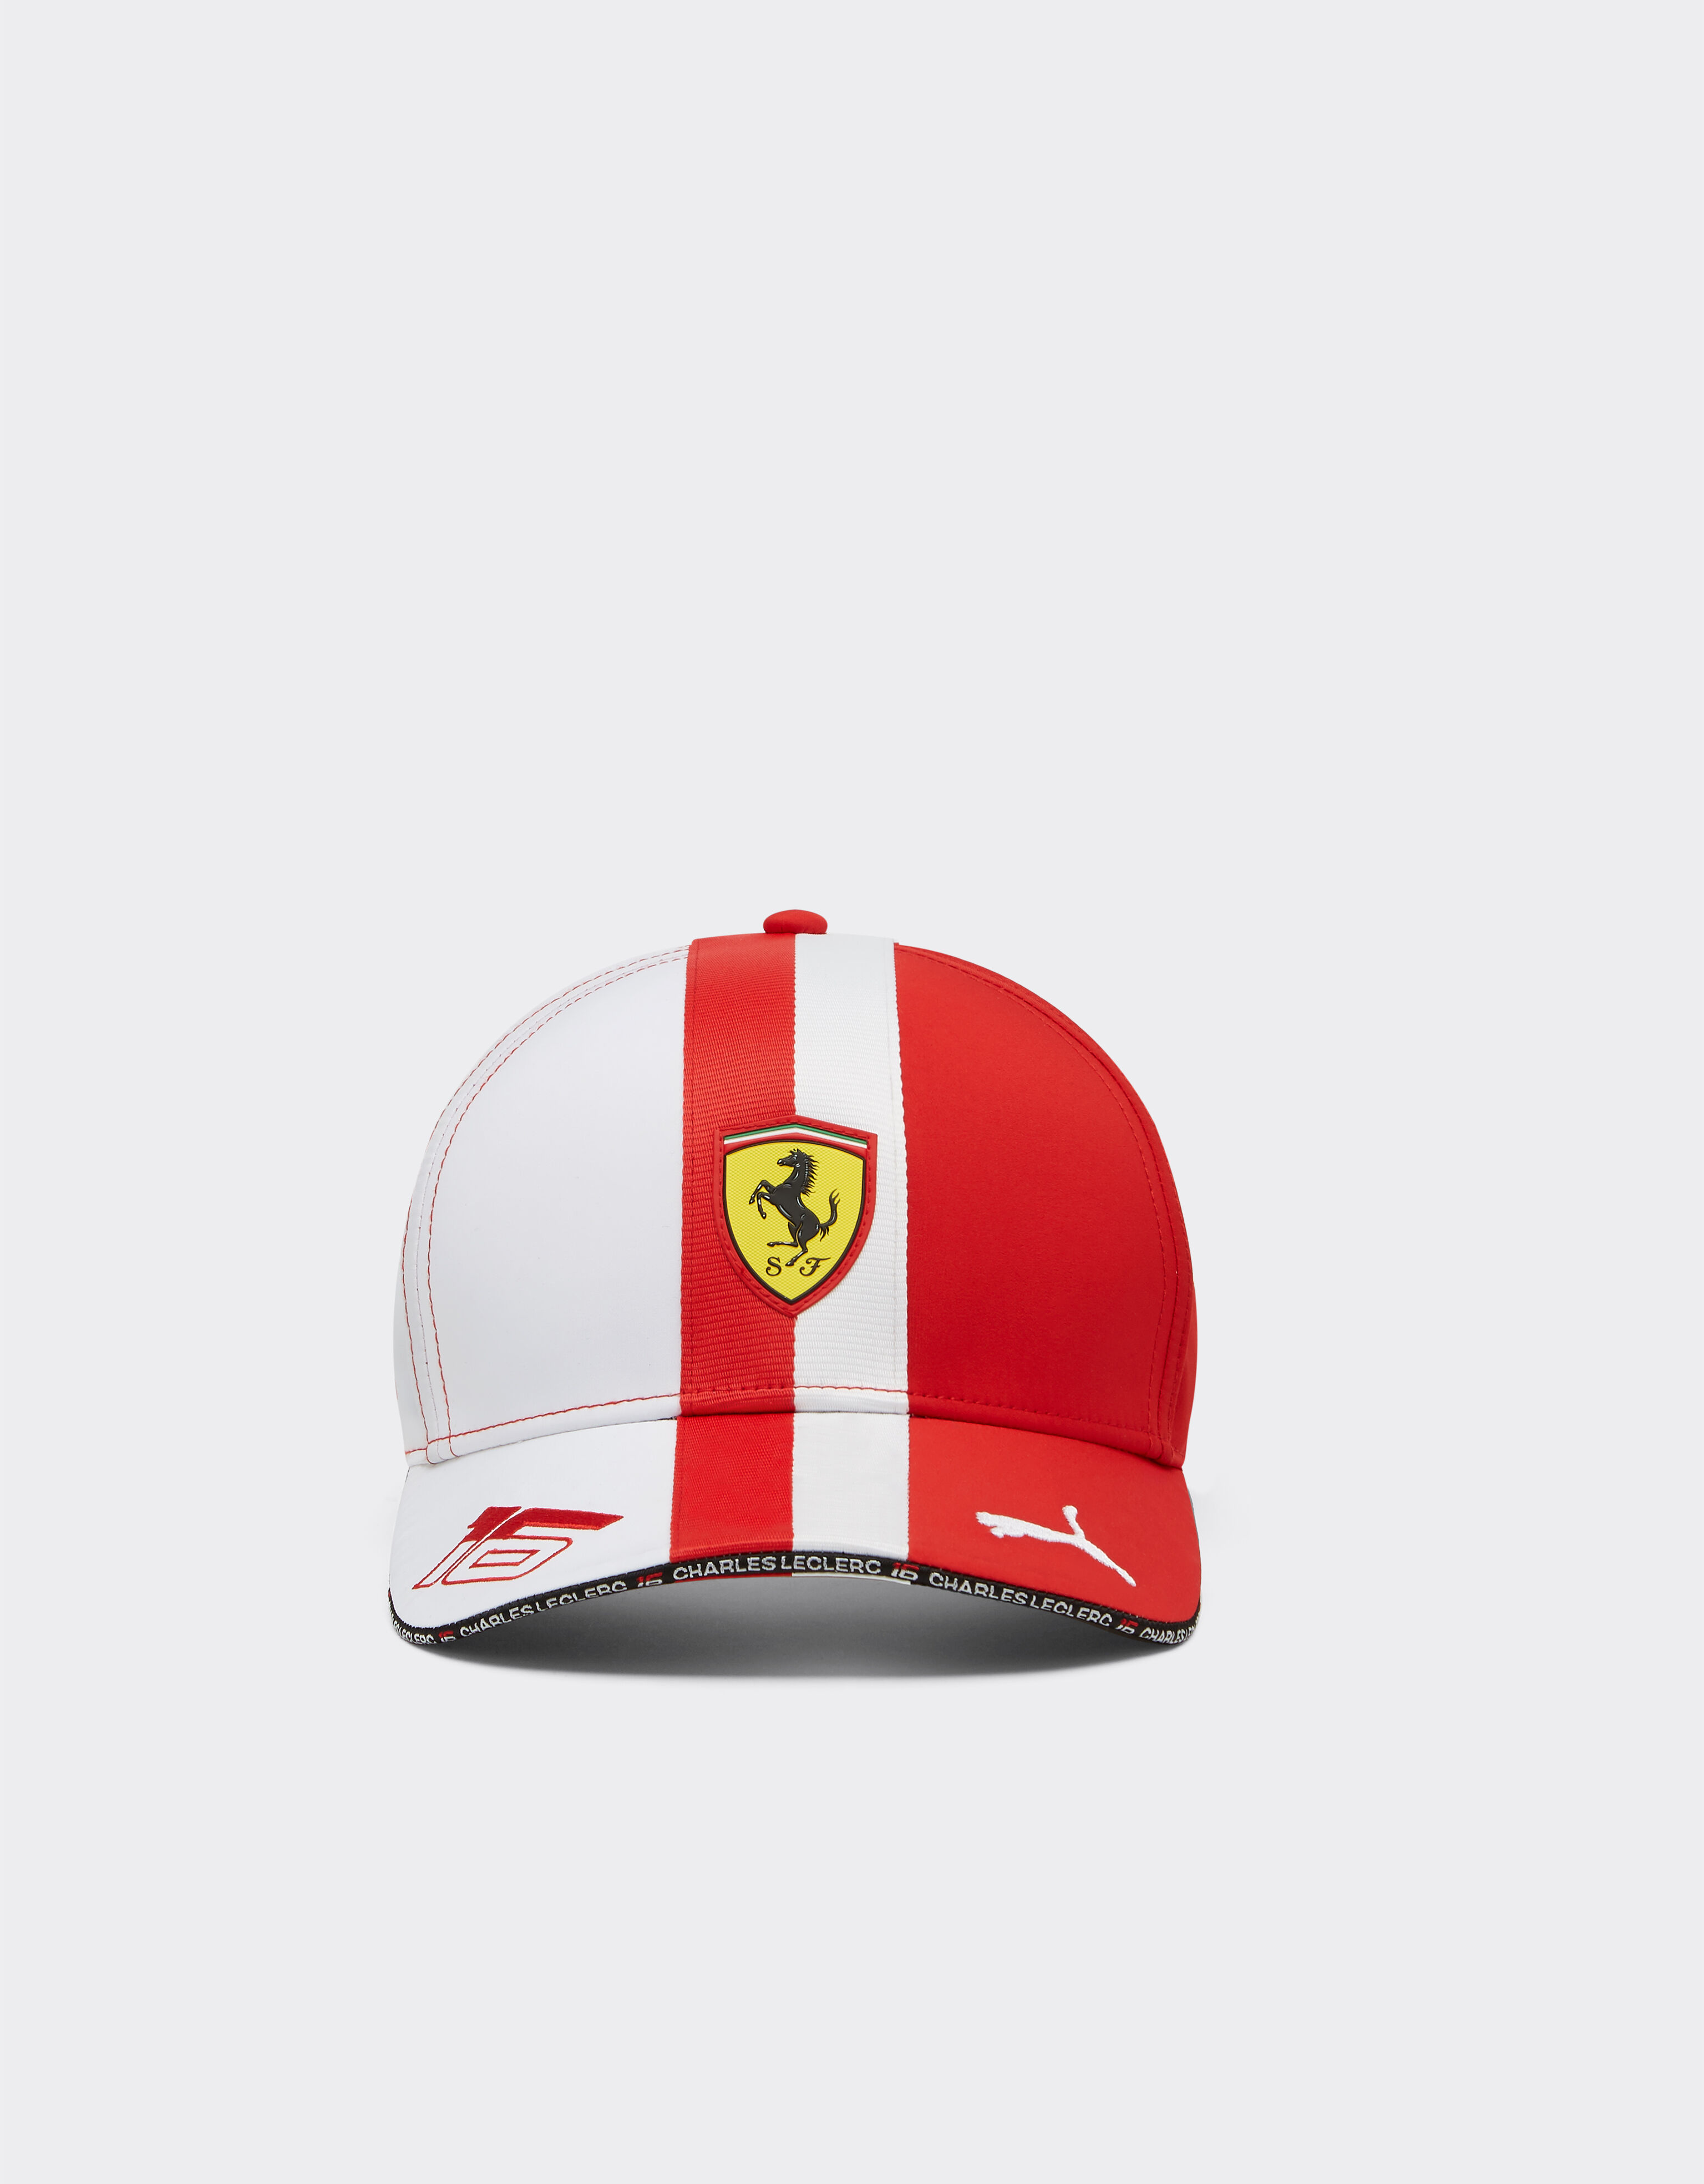 Ferrari Puma for Scuderia Ferrari Leclerc hat - Monaco Special Edition Rojo F1348f